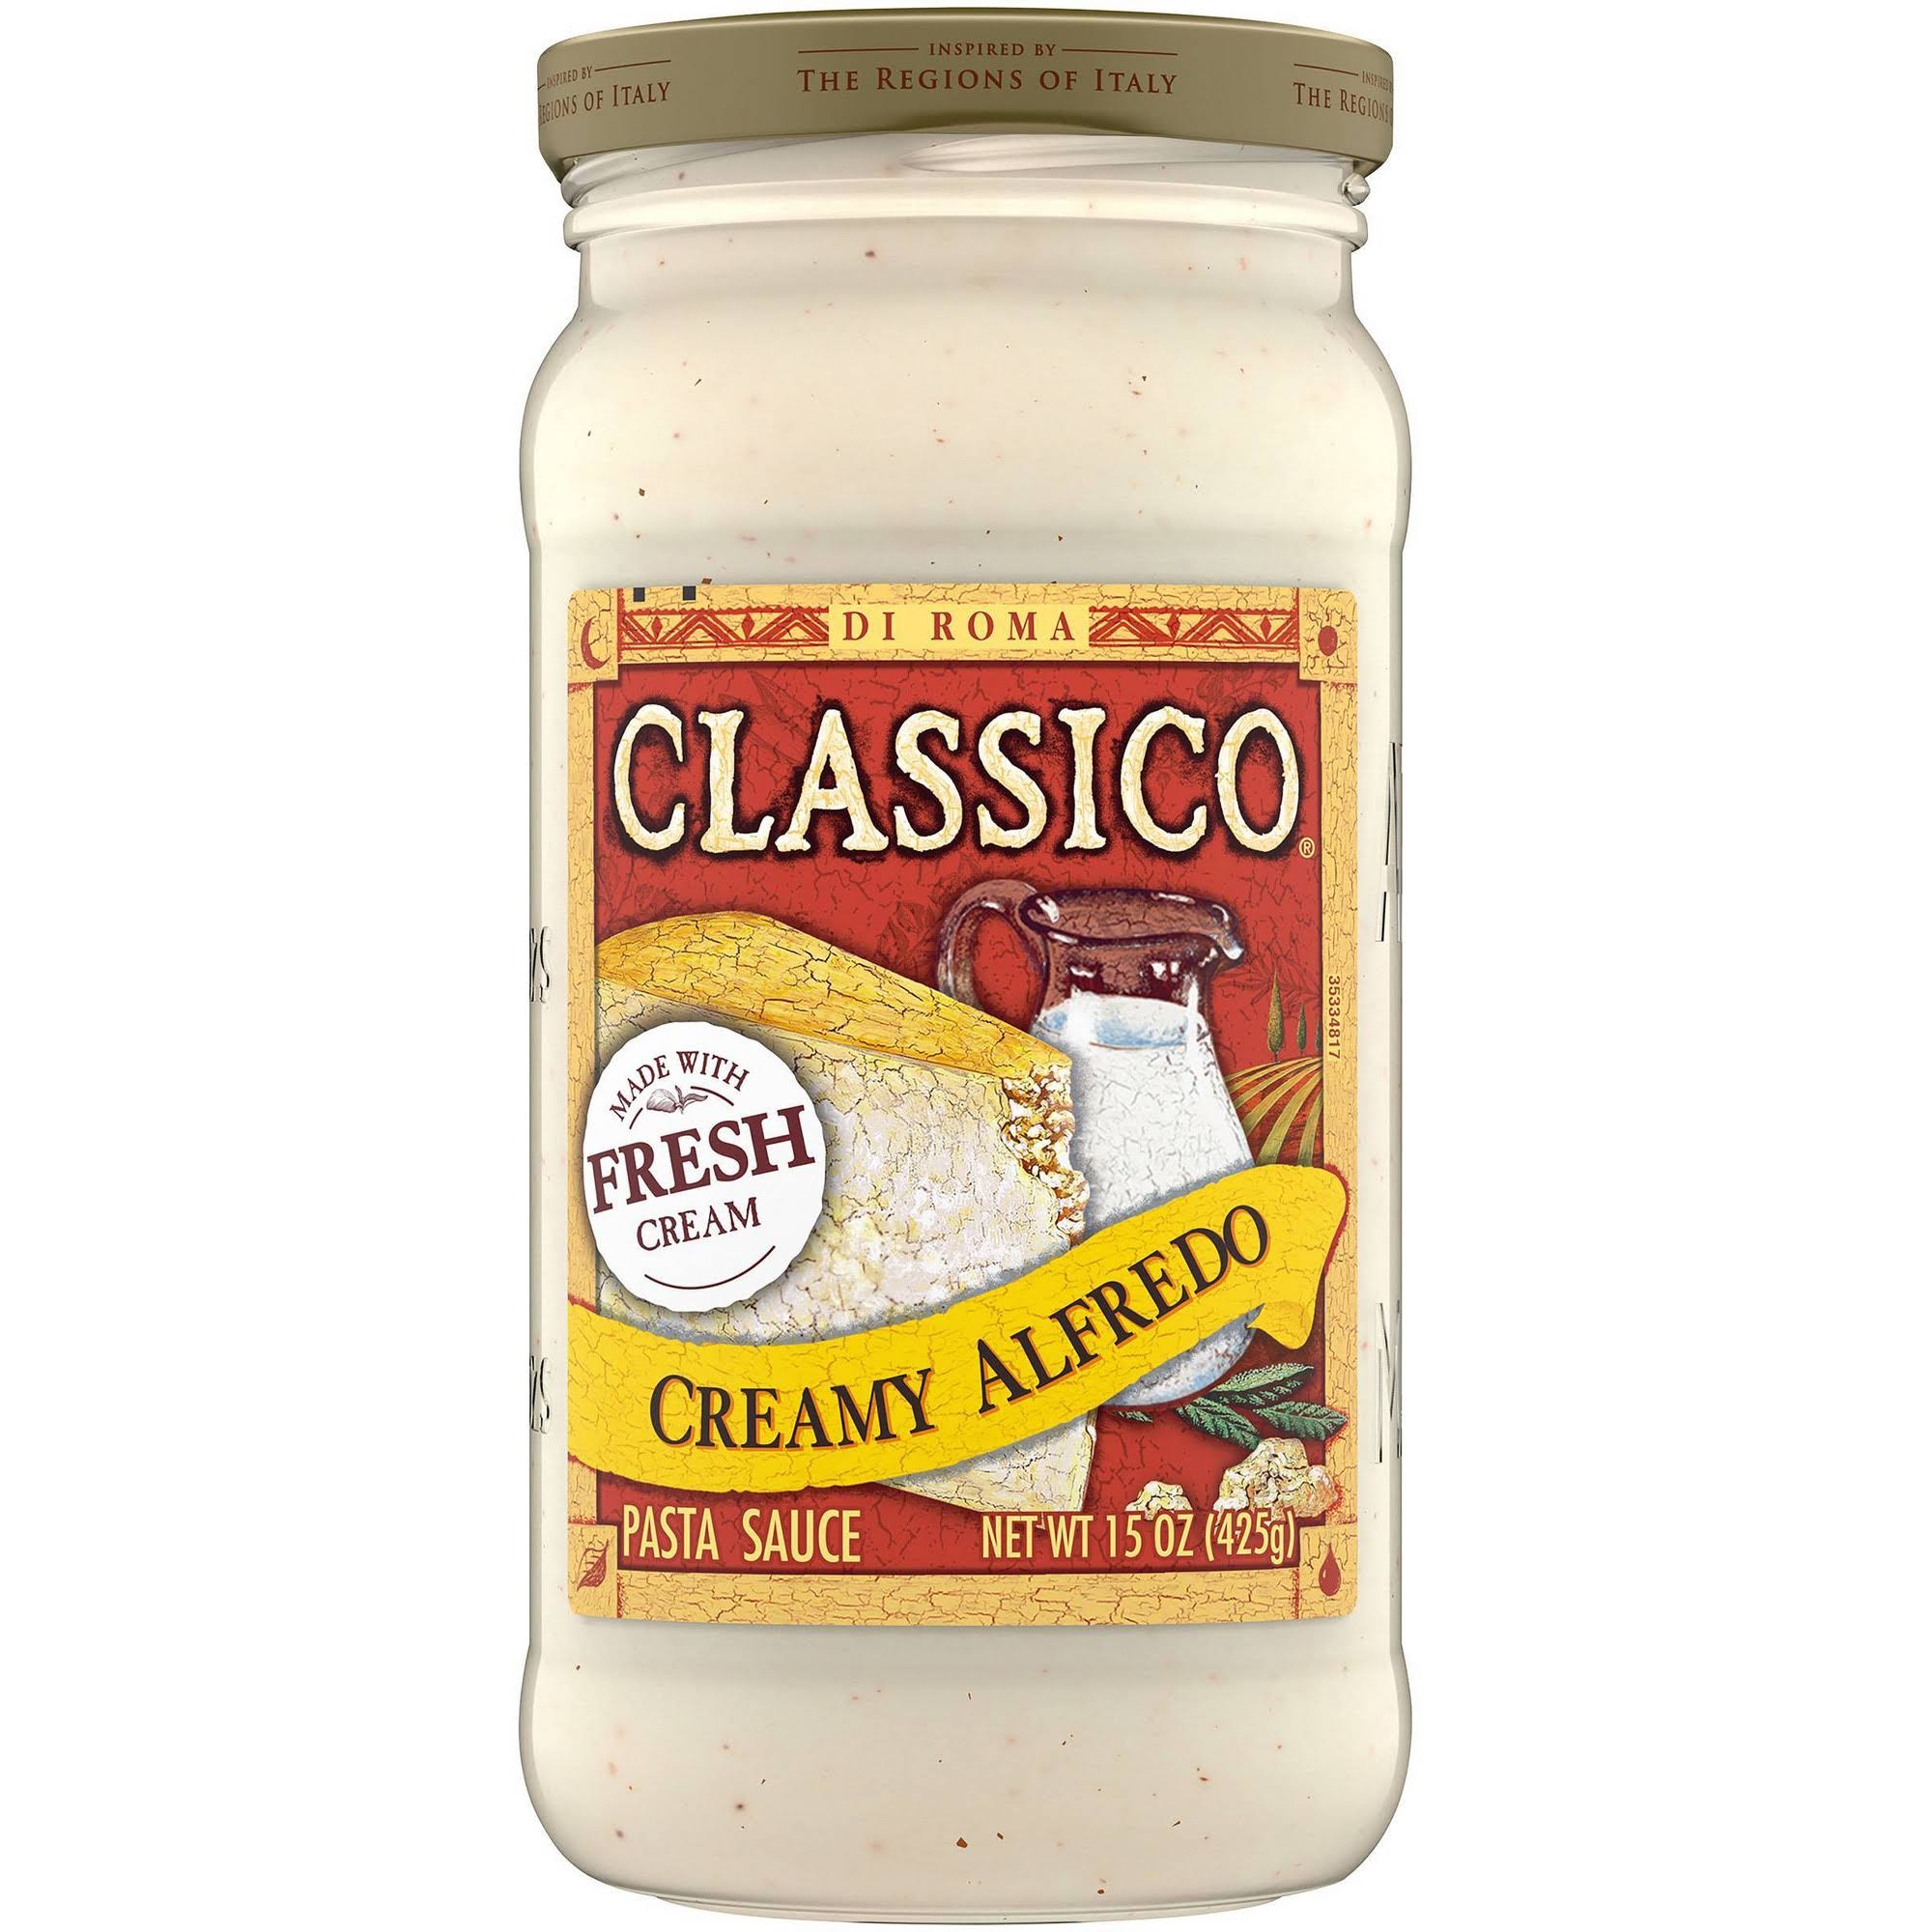 Classico Pasta Sauce - Creamy Alfredo, 16oz